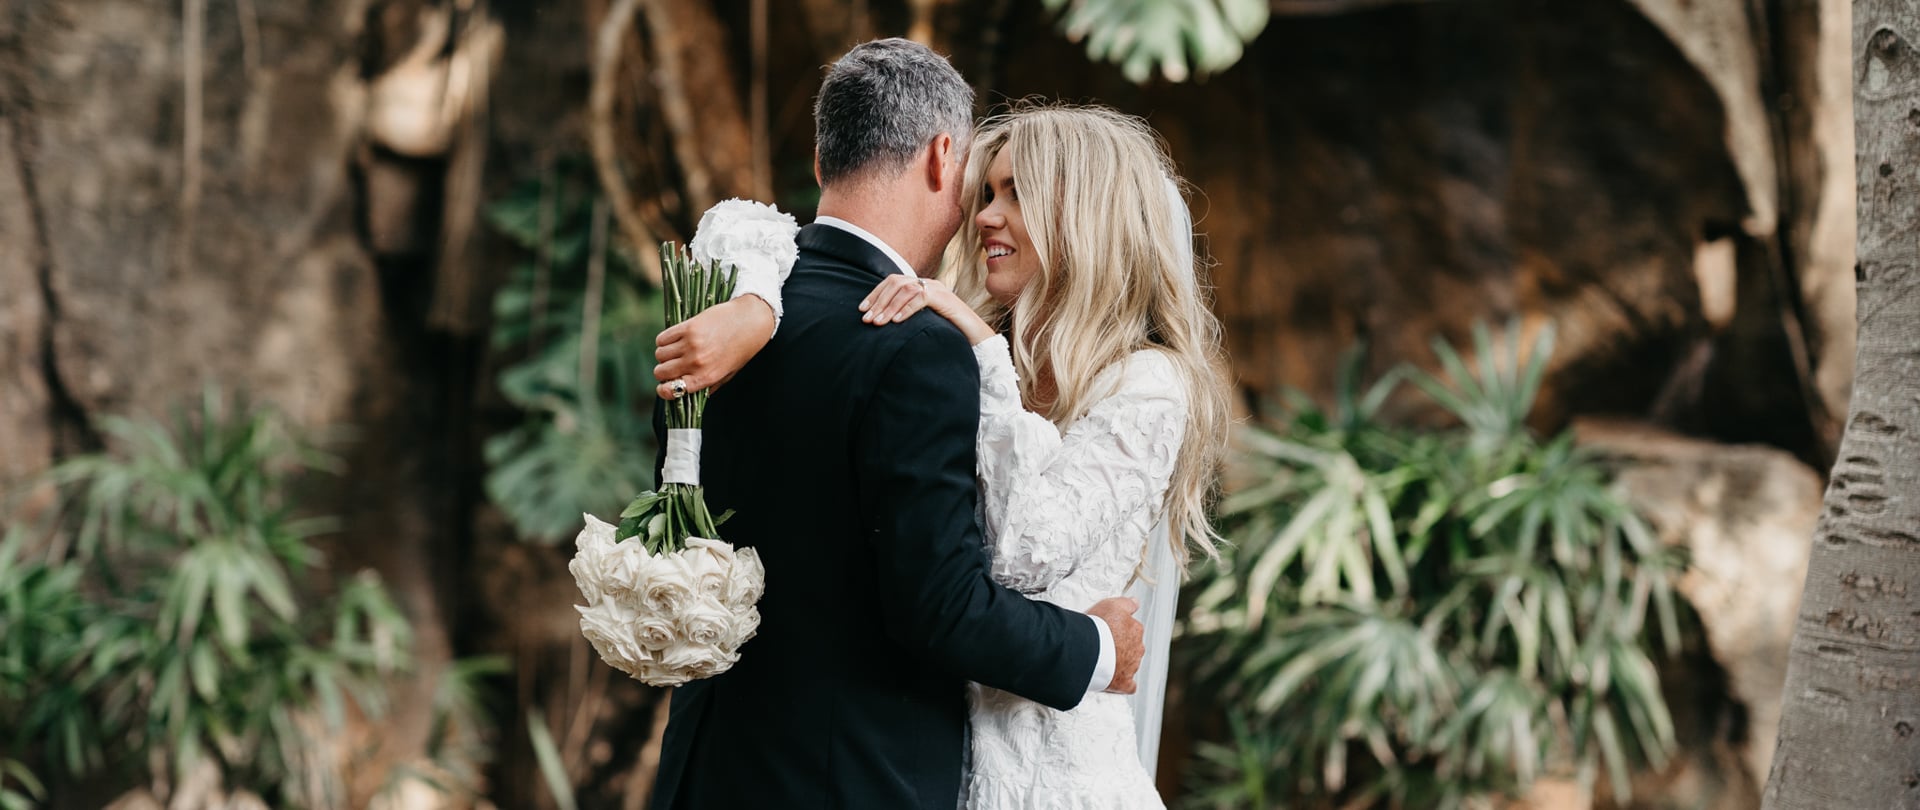 Rachael & Andrew Wedding Video Filmed at Queensland, Australia